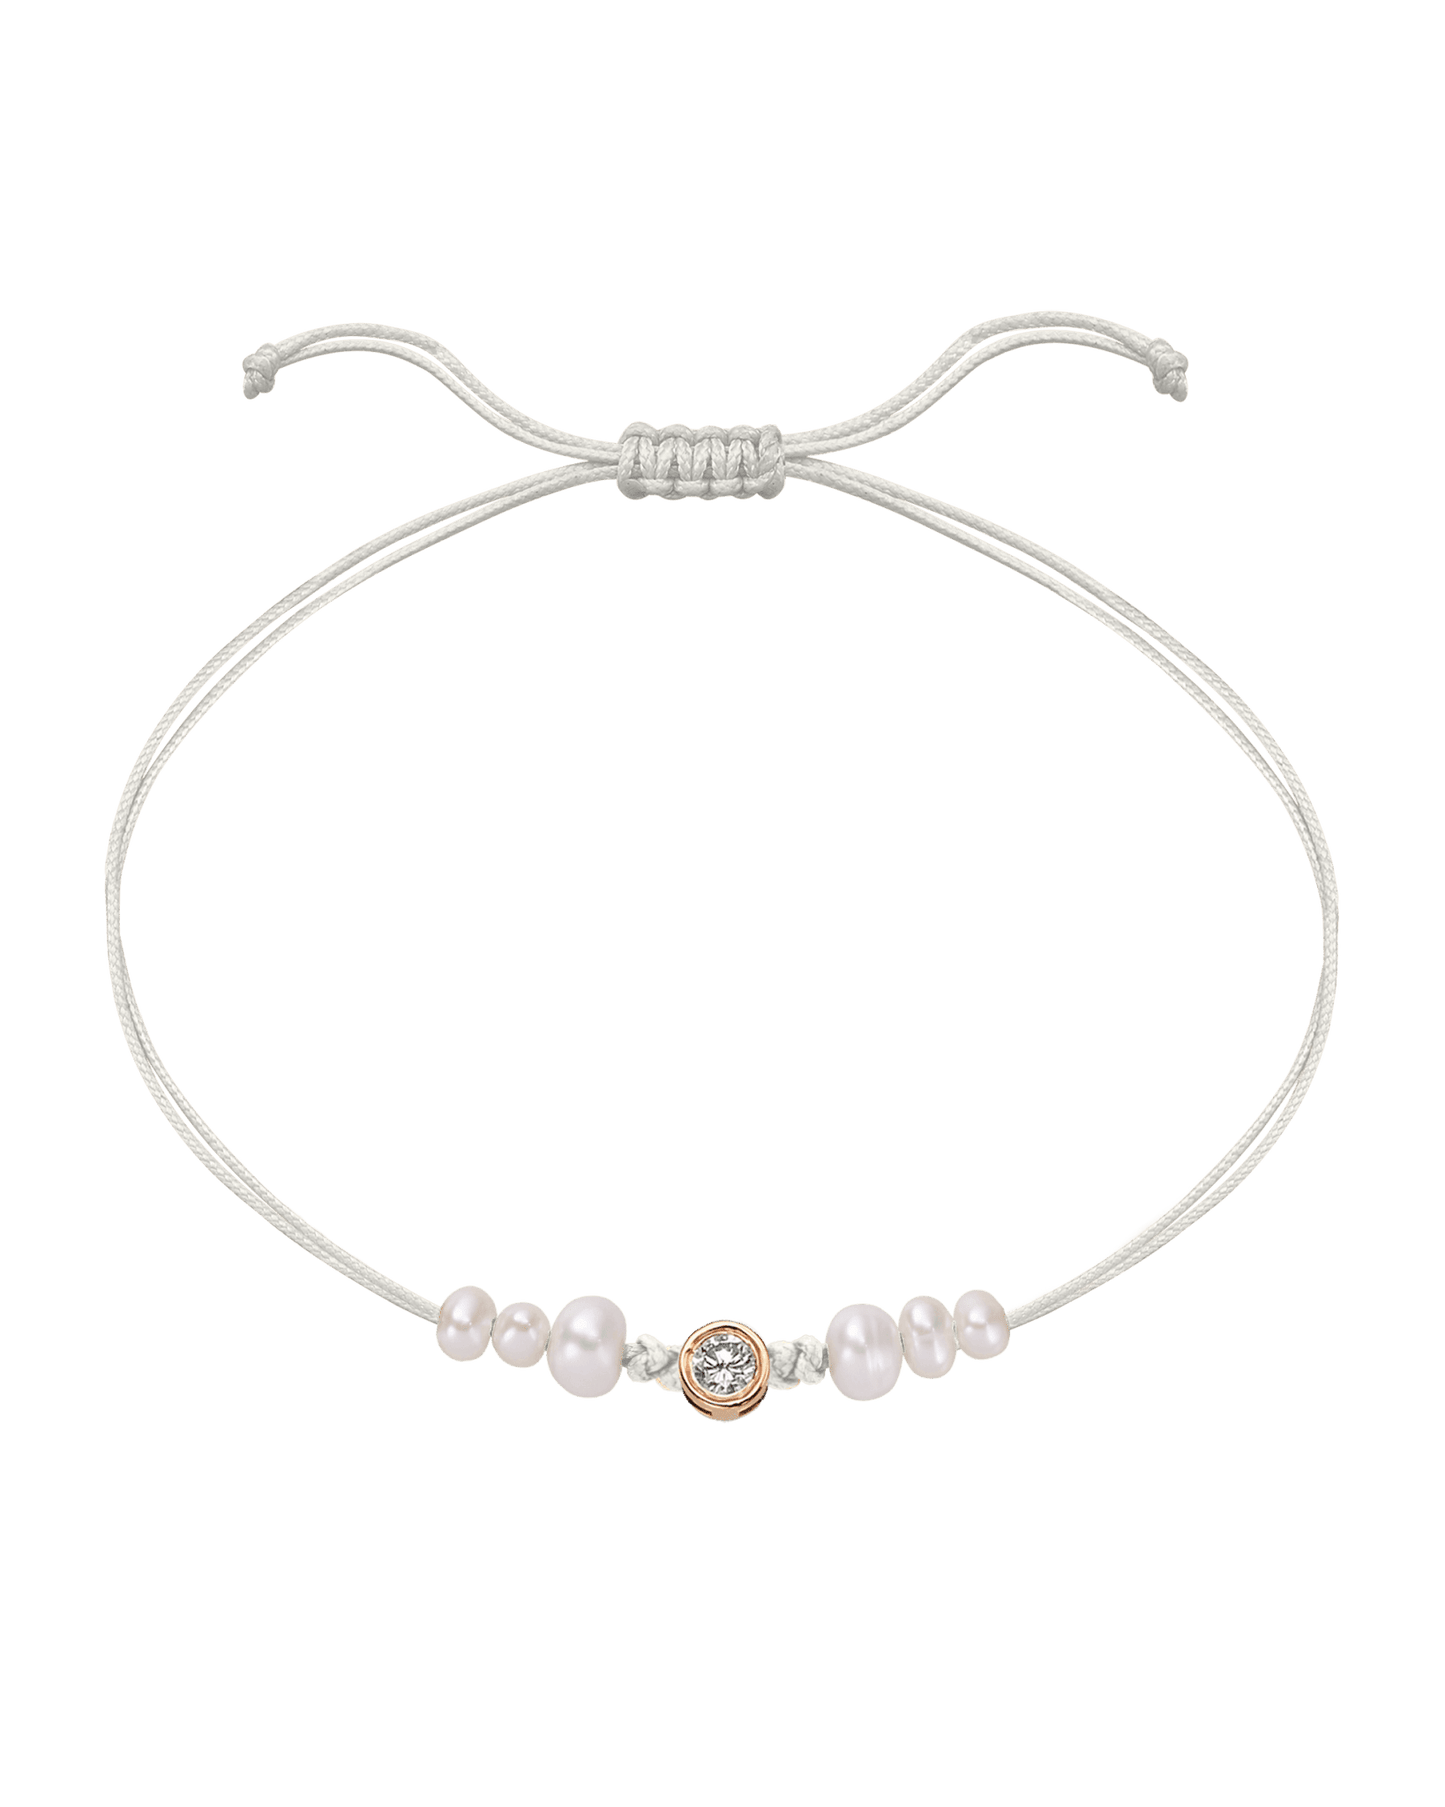 Six Natural Pearl String of Love Bracelet - 14K Rose Gold Bracelet 14K Solid Gold Pearl Large: 0.1ct 